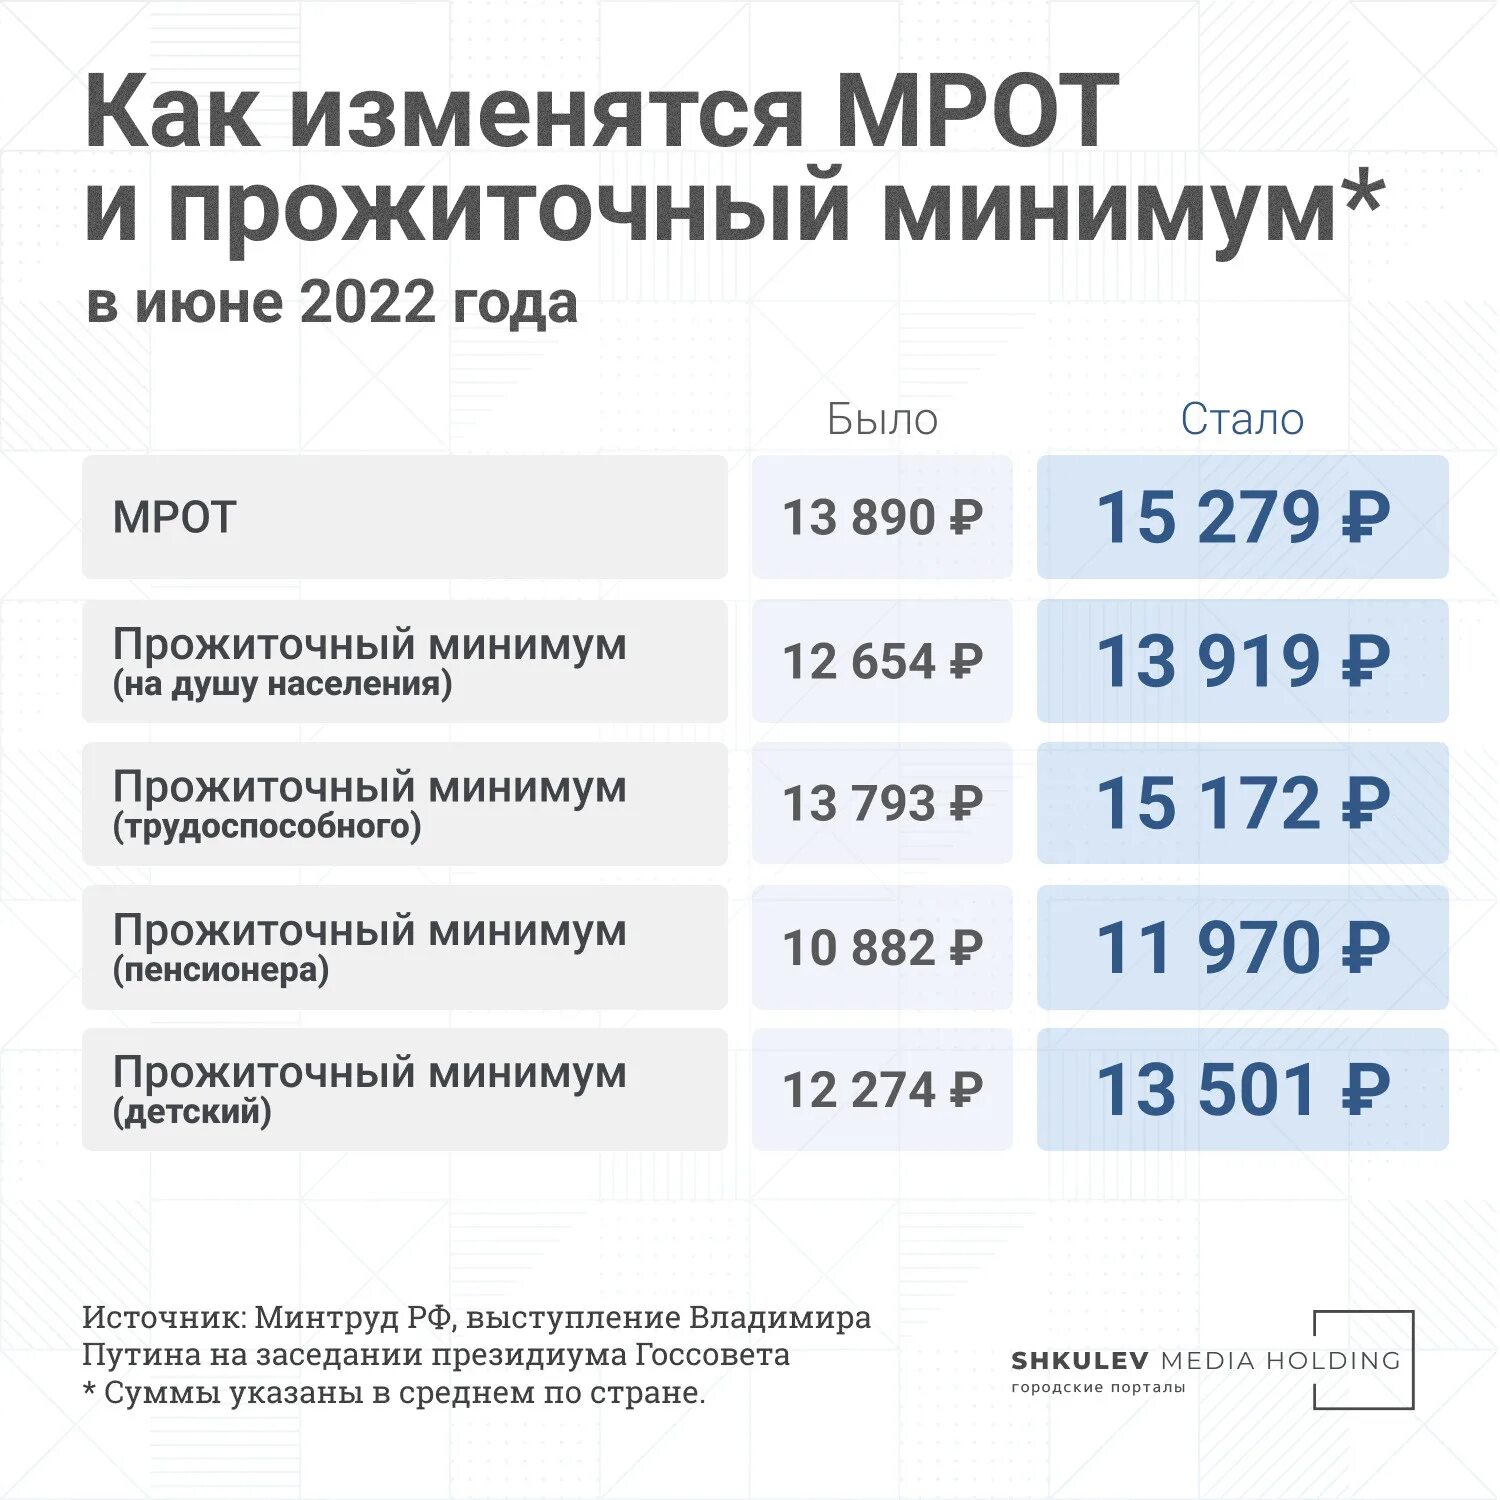 Прожиточный минимум в прошлом году в России 2023. Прожиточный минимум 2022. МРОТ И прожиточный минимум 2022. Прожиточный минимум для трудоспособного населения в 2022.